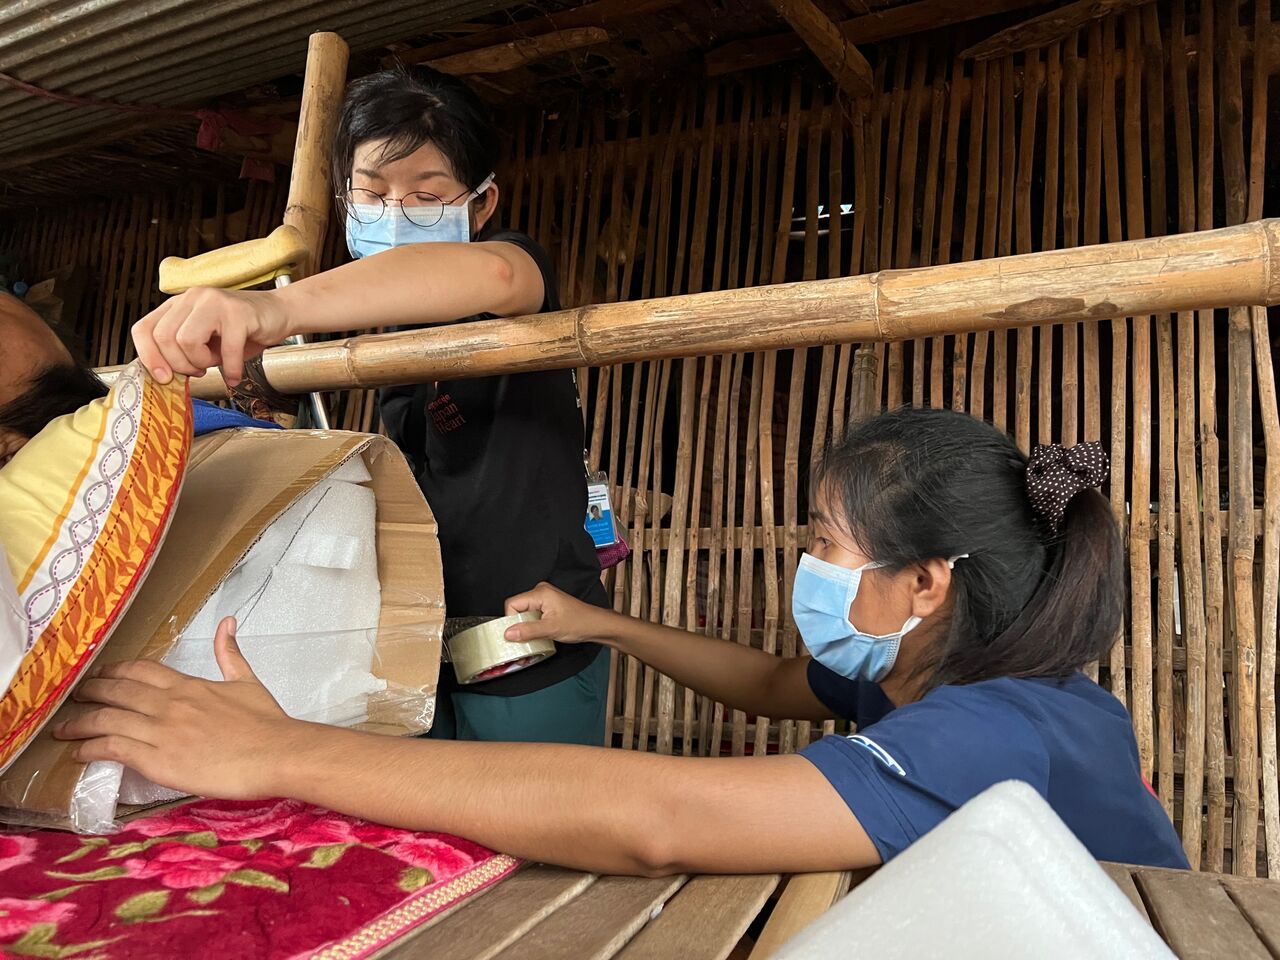 受け持ち患者を通して知ったカンボジア人の生活環境と看護の難しさ